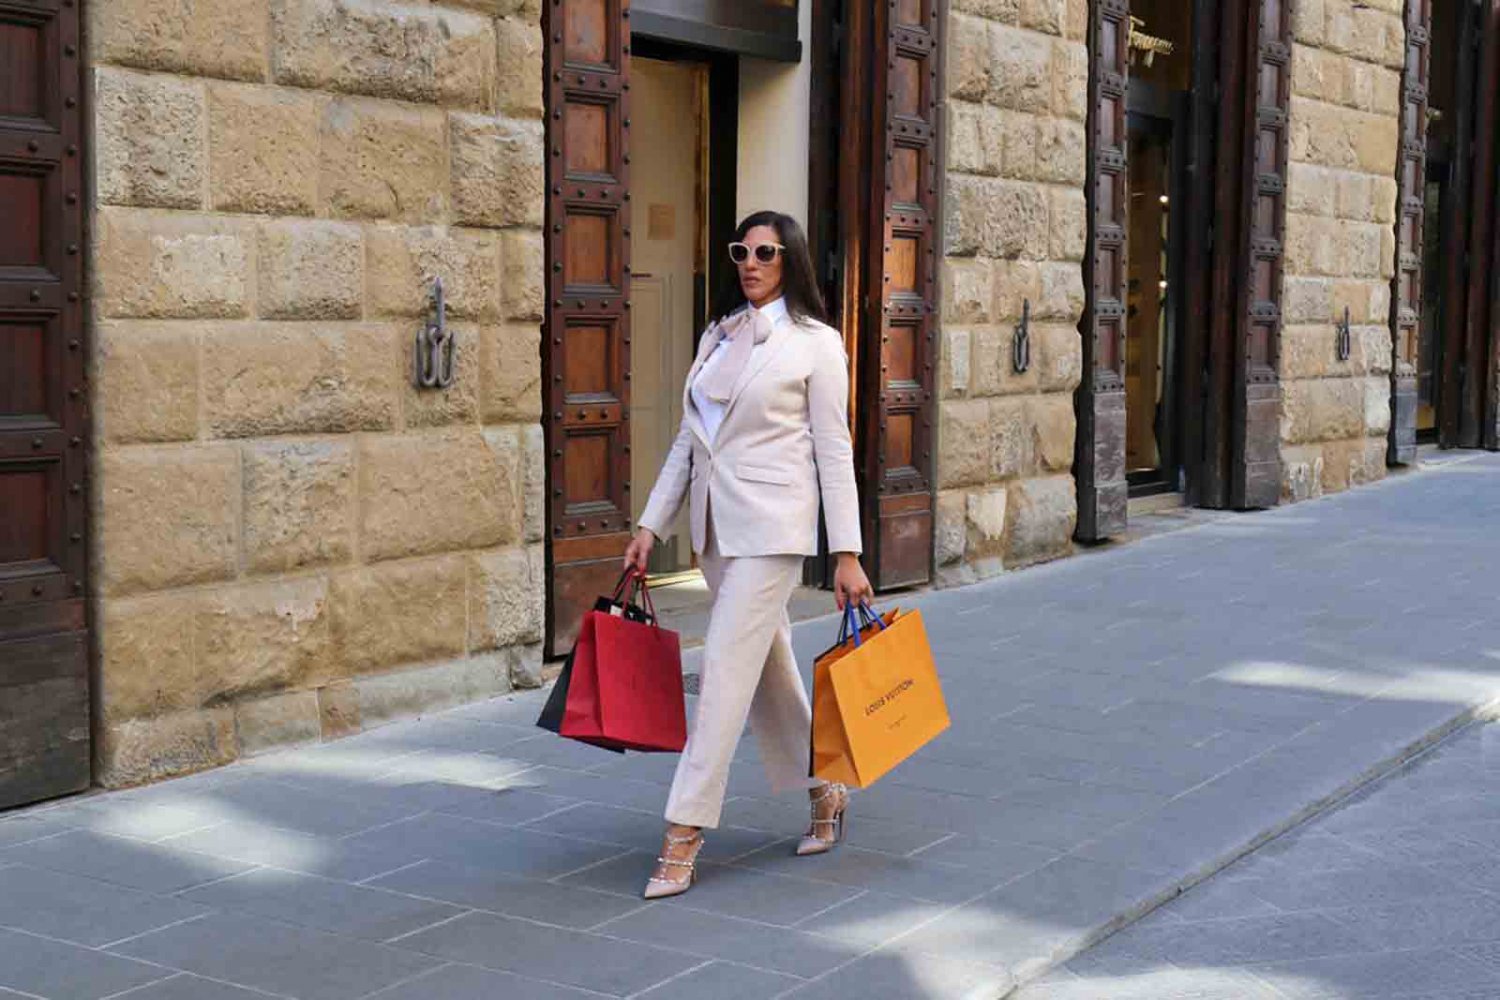 Personal shopper in Italy: shopping tourism - Dalahi Ortiz